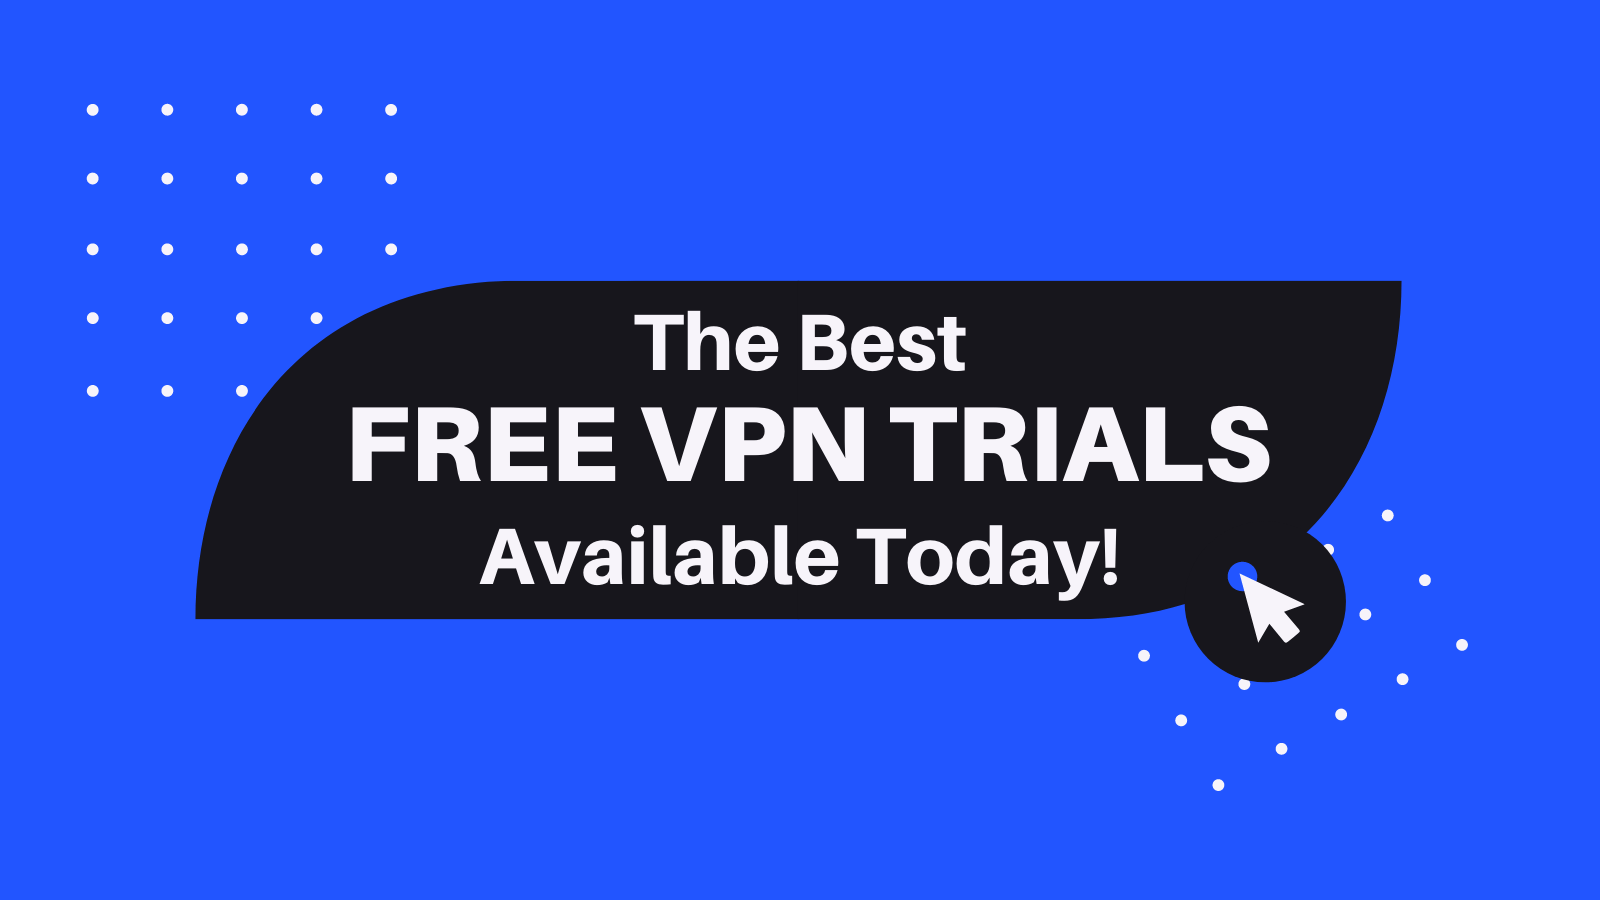 12 Best VPN Free Trials in 2022: Test for 7 & 30 Days - TechNadu